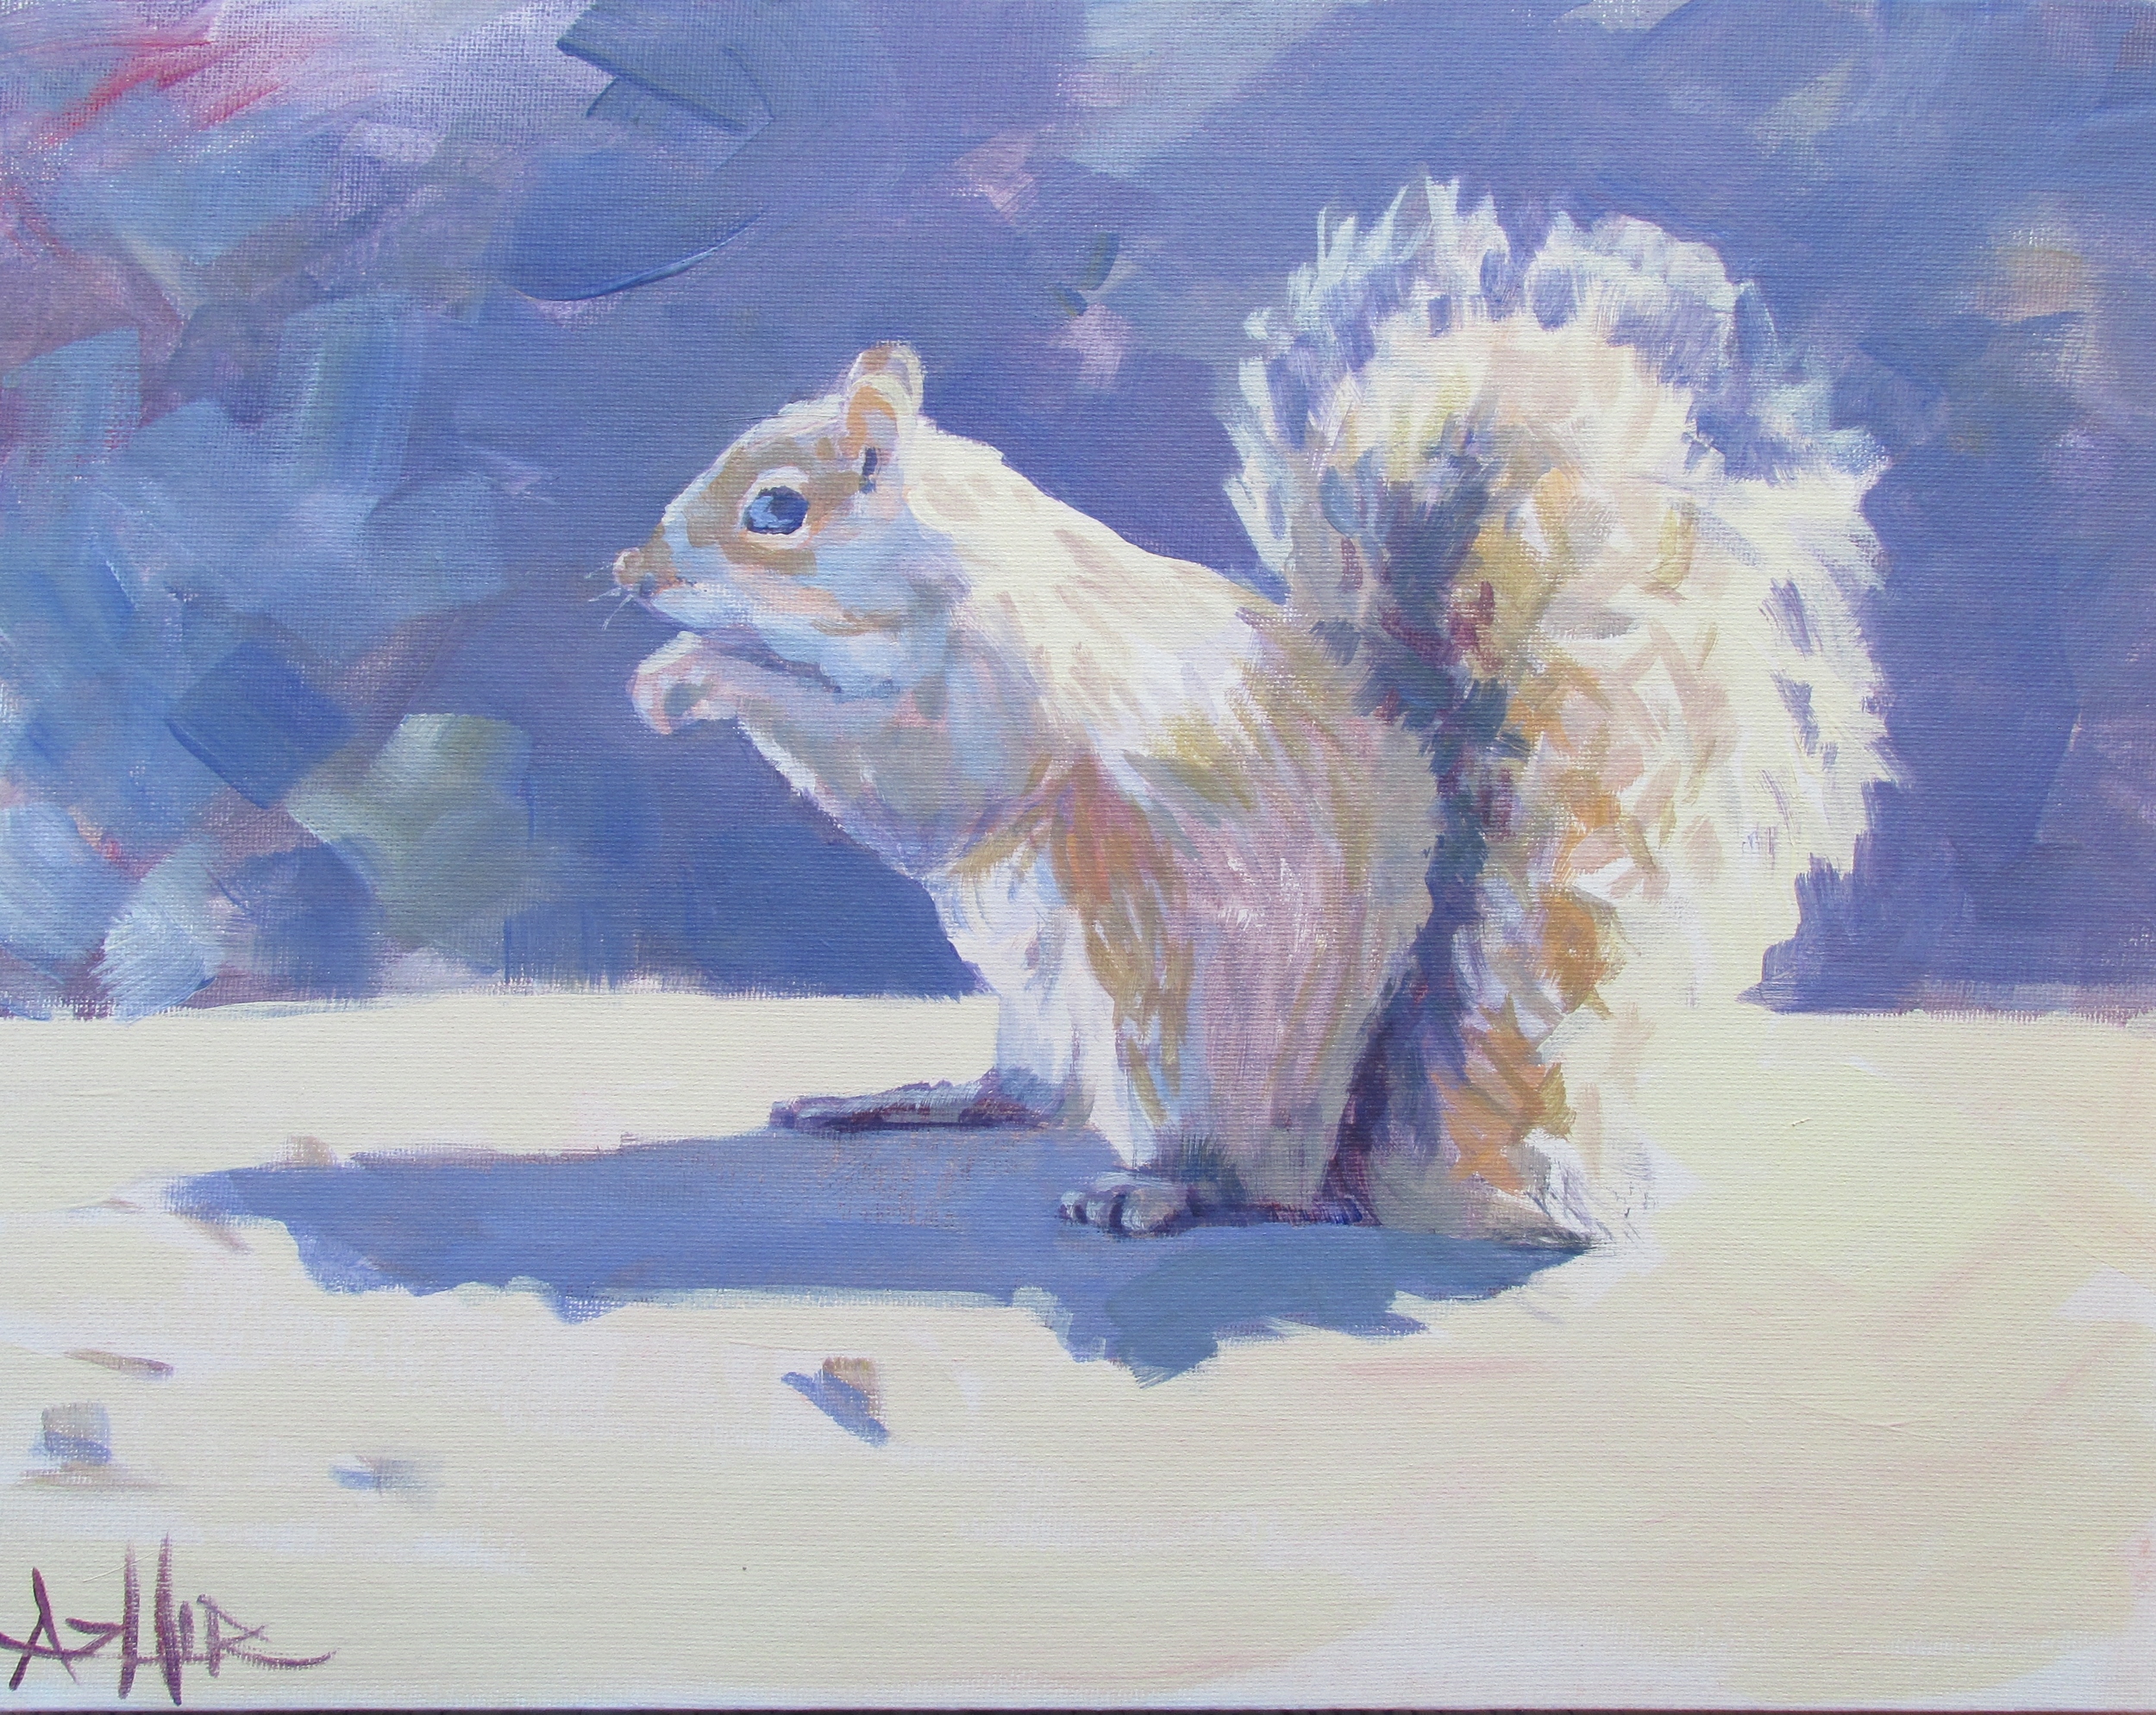 SOLD, Mr. Squirrel, Copyright 2015 Hirschten, Acrylic on Canvas 11" x 14"